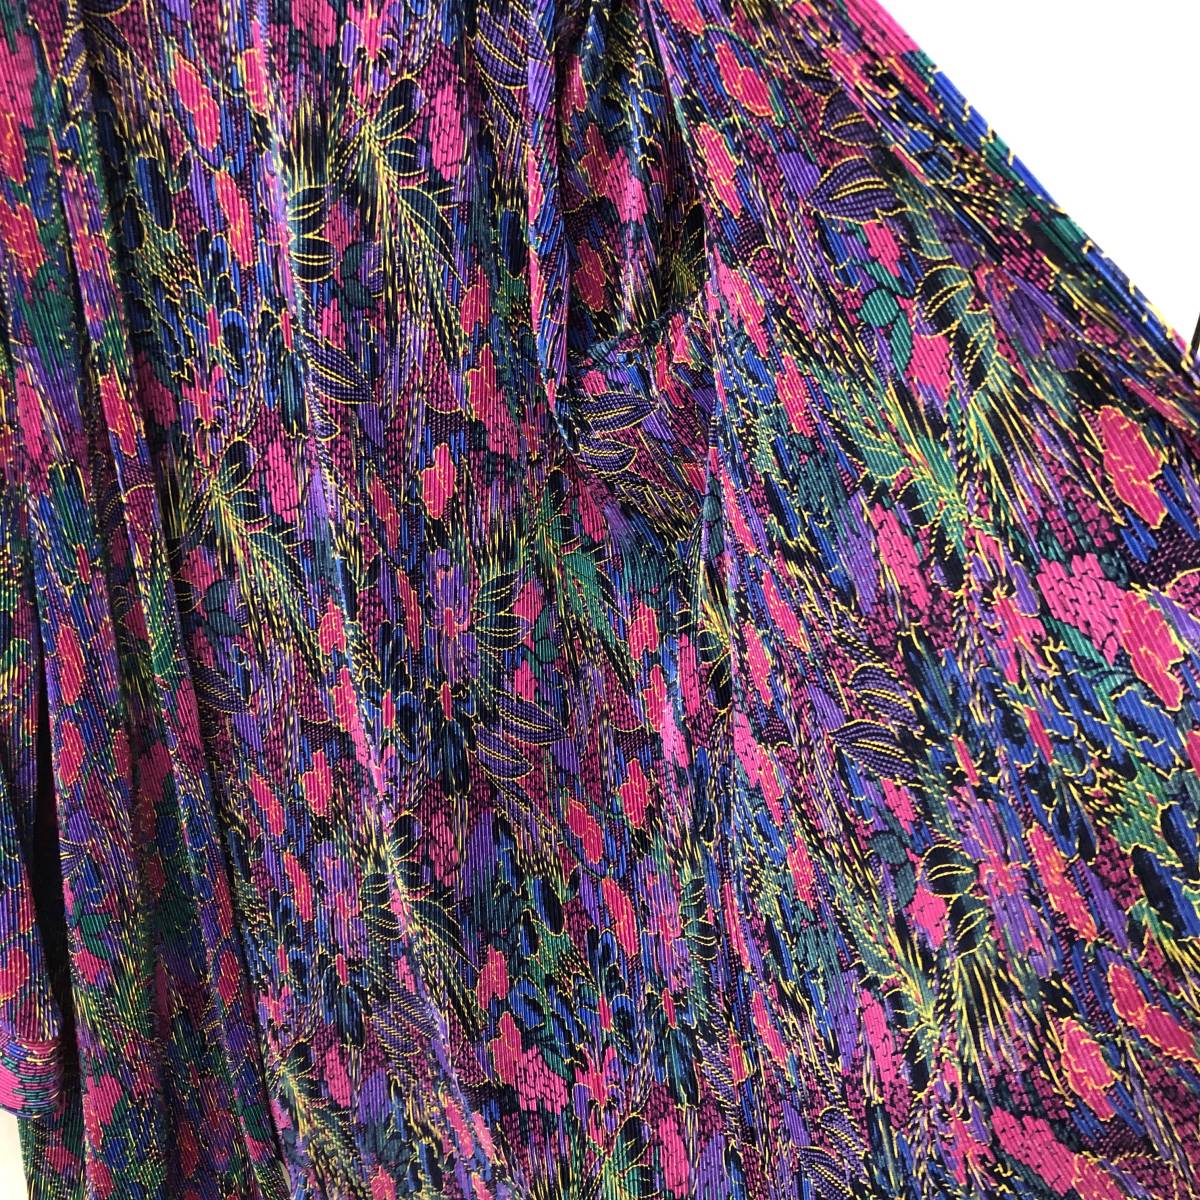 [洋服] カラフルな色味のジャケット 花柄 プリーツ加工 メーカー・サイズ不明 レディースファッション_画像8